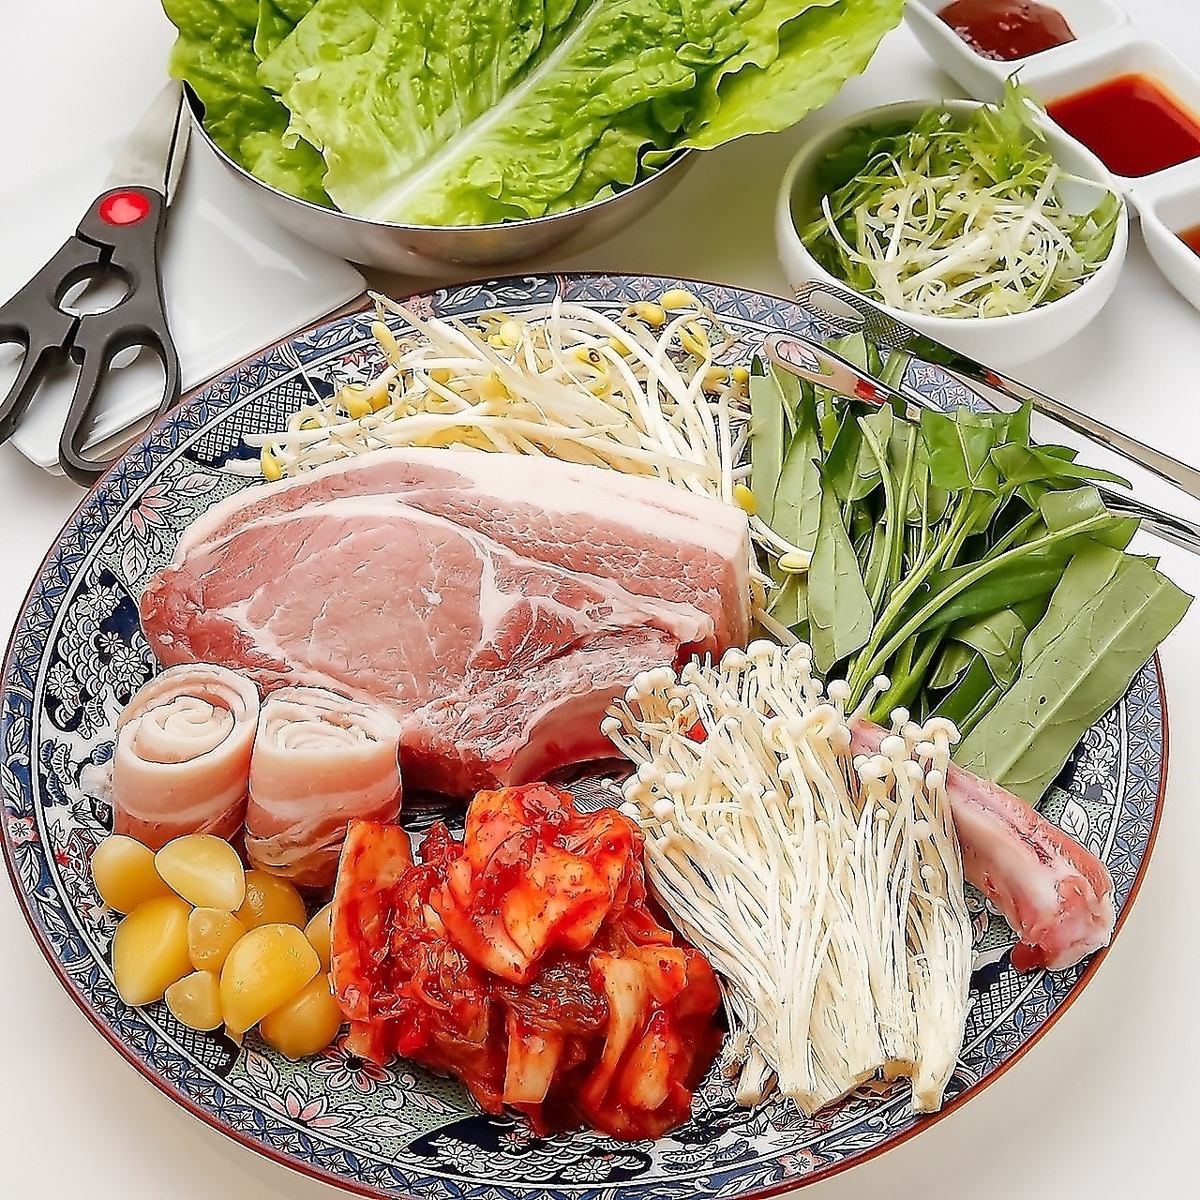 自助餐套餐 ★五花肉套餐 + 韓國料理自助餐 2,850日元